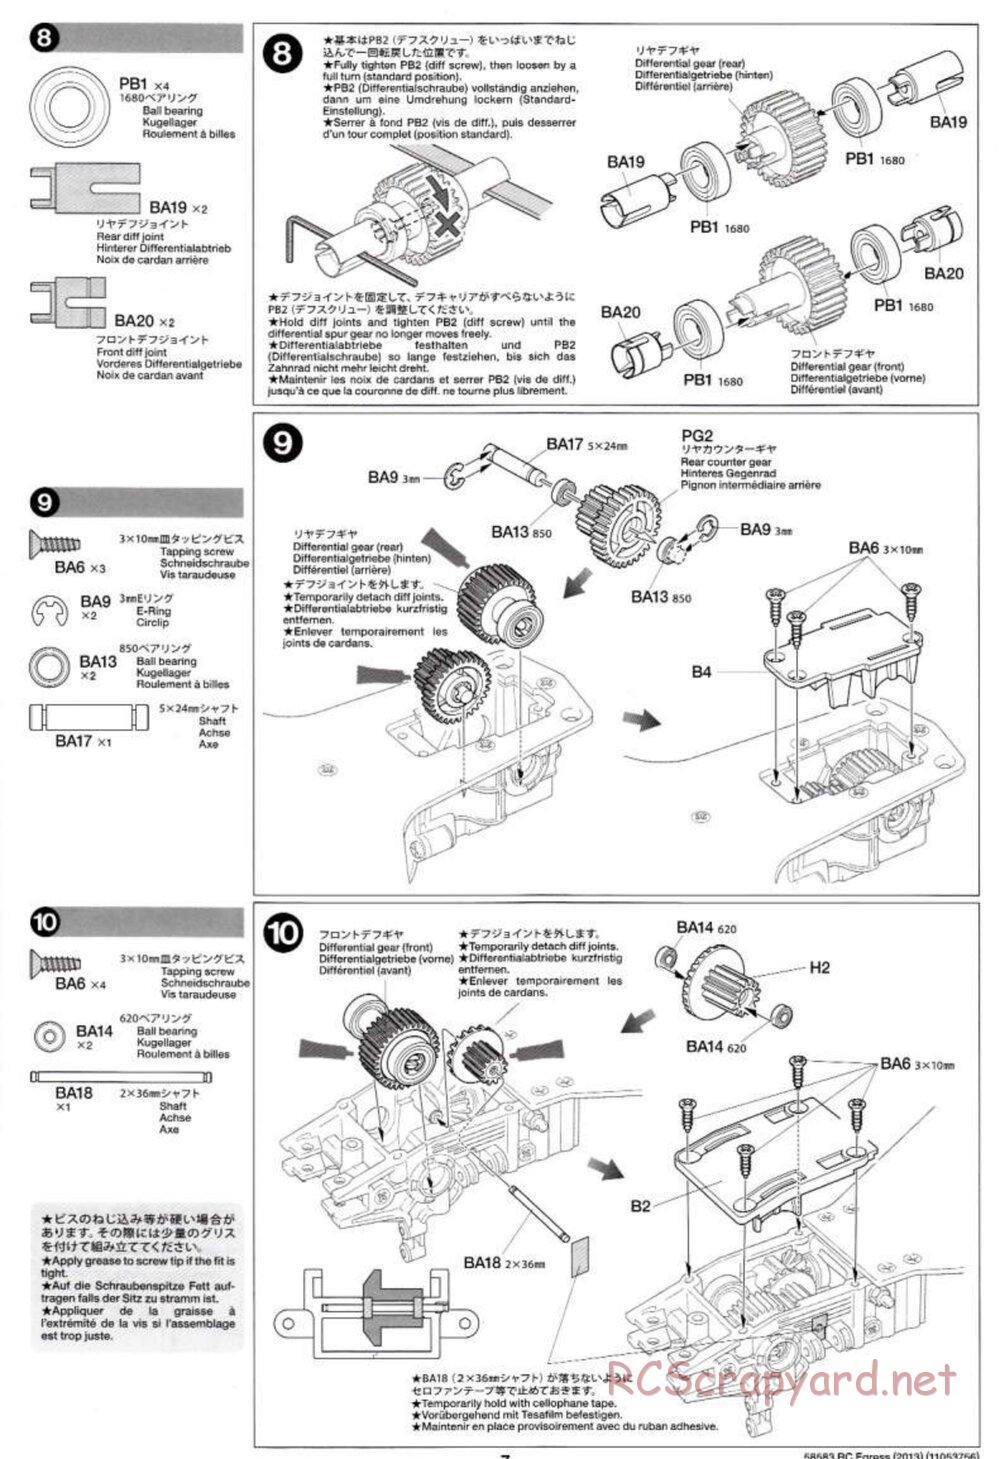 Tamiya - Egress 2013 - AV Chassis - Manual - Page 7